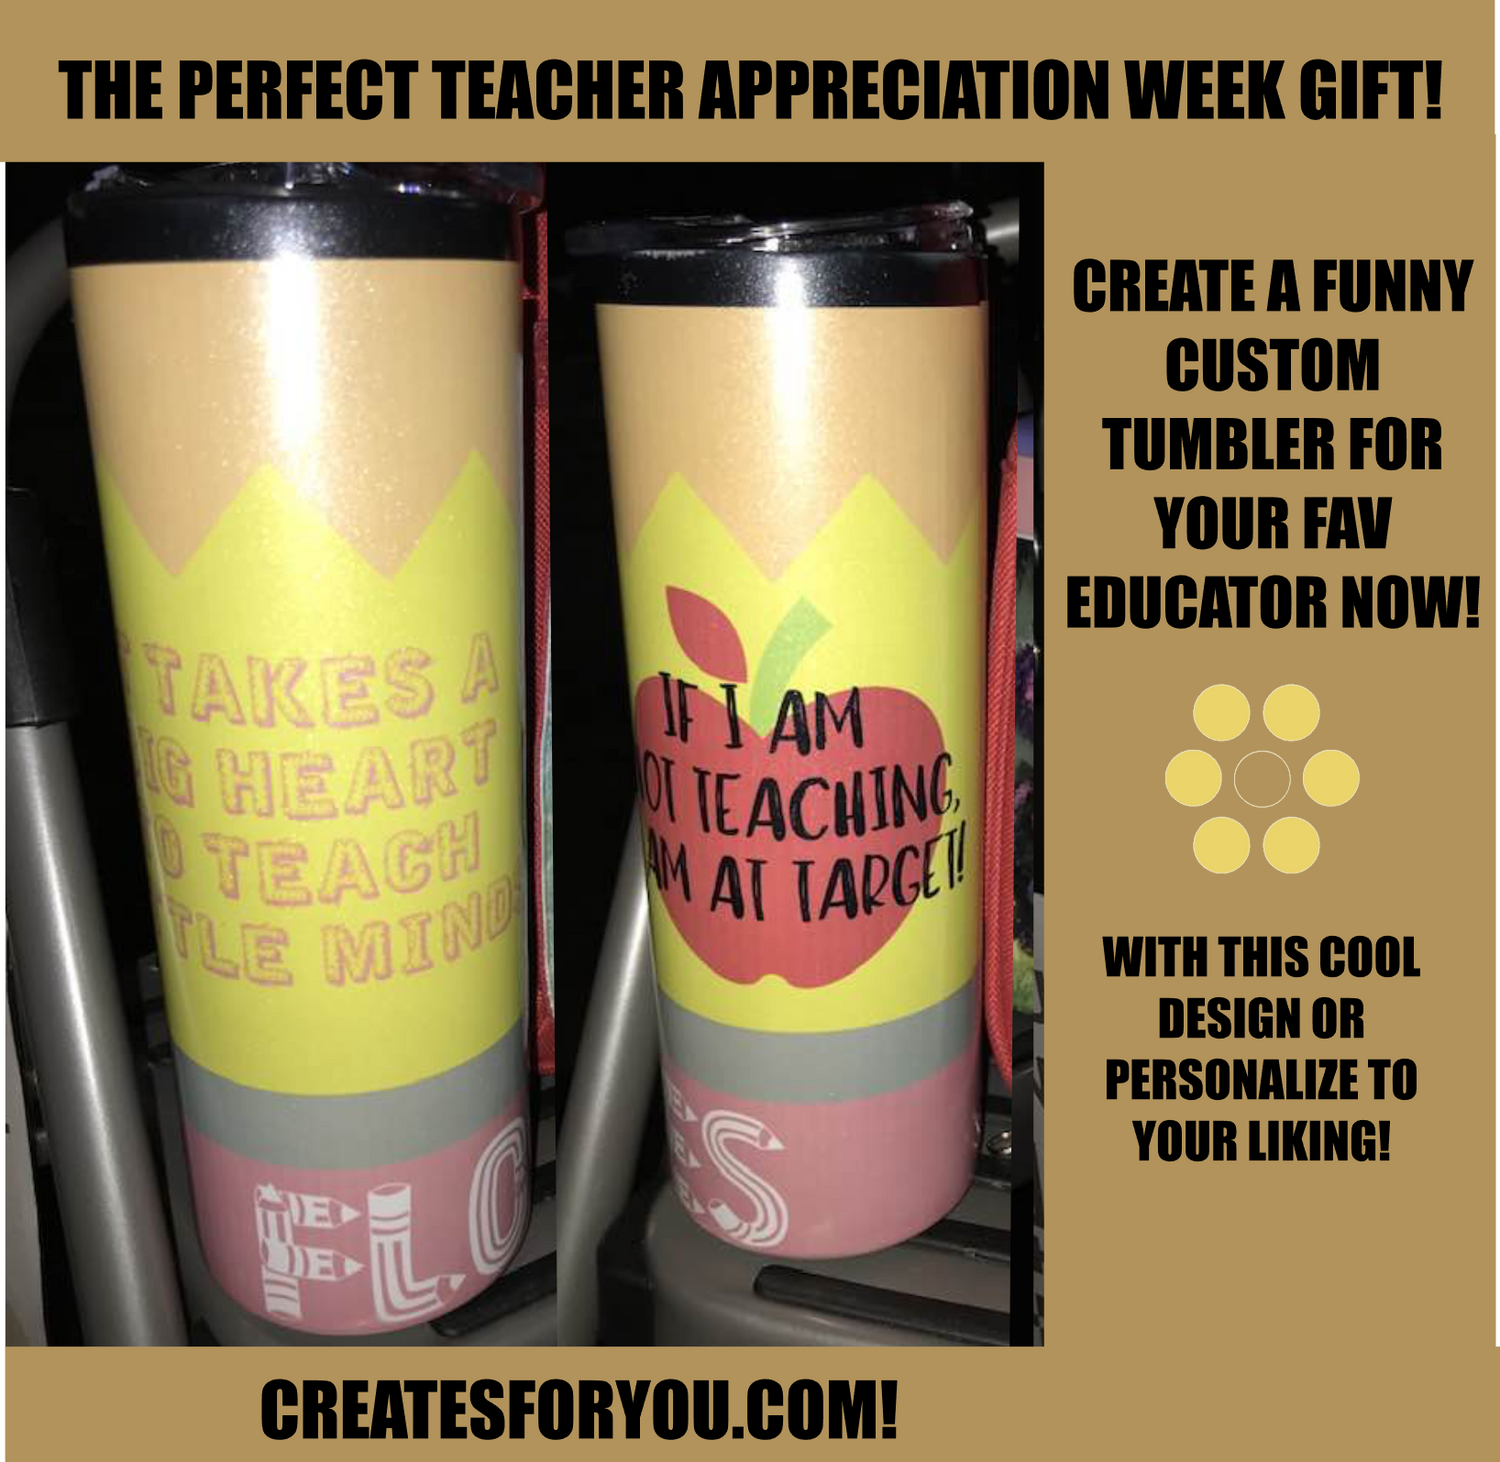 TEACHER APPRECIATION GIFTS!